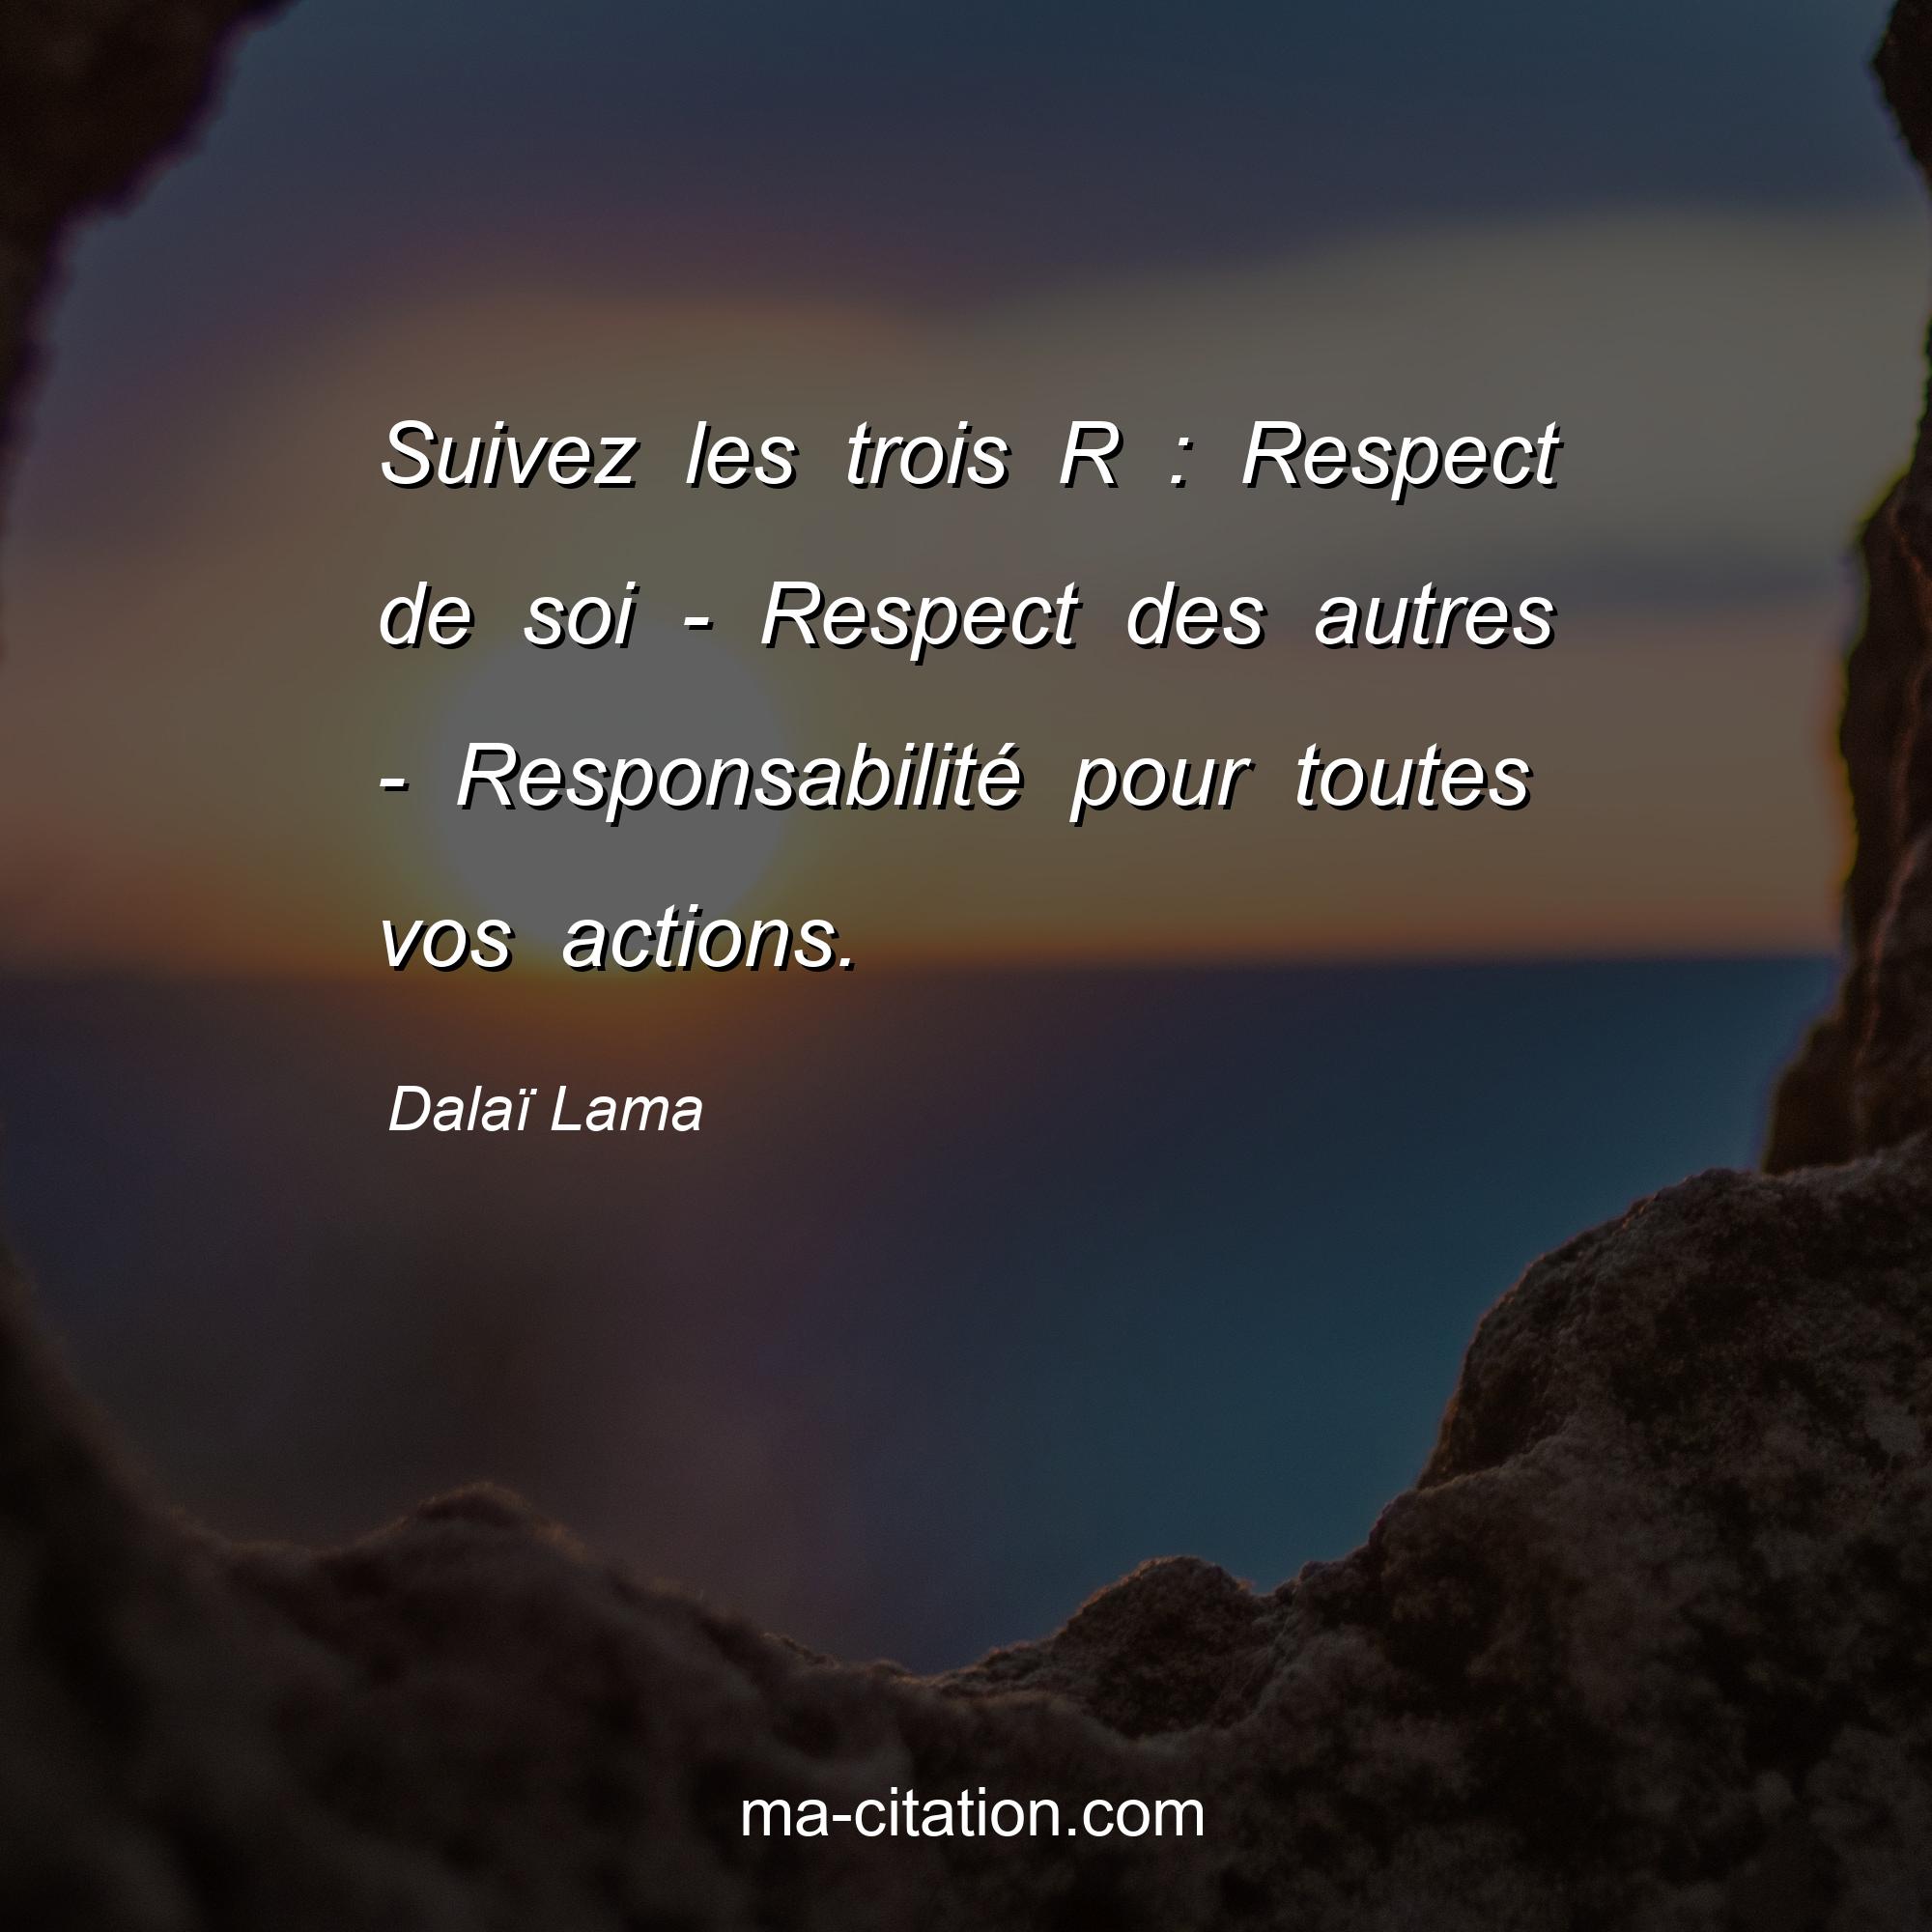 Dalaï Lama : Suivez les trois R : Respect de soi - Respect des autres - Responsabilité pour toutes vos actions.